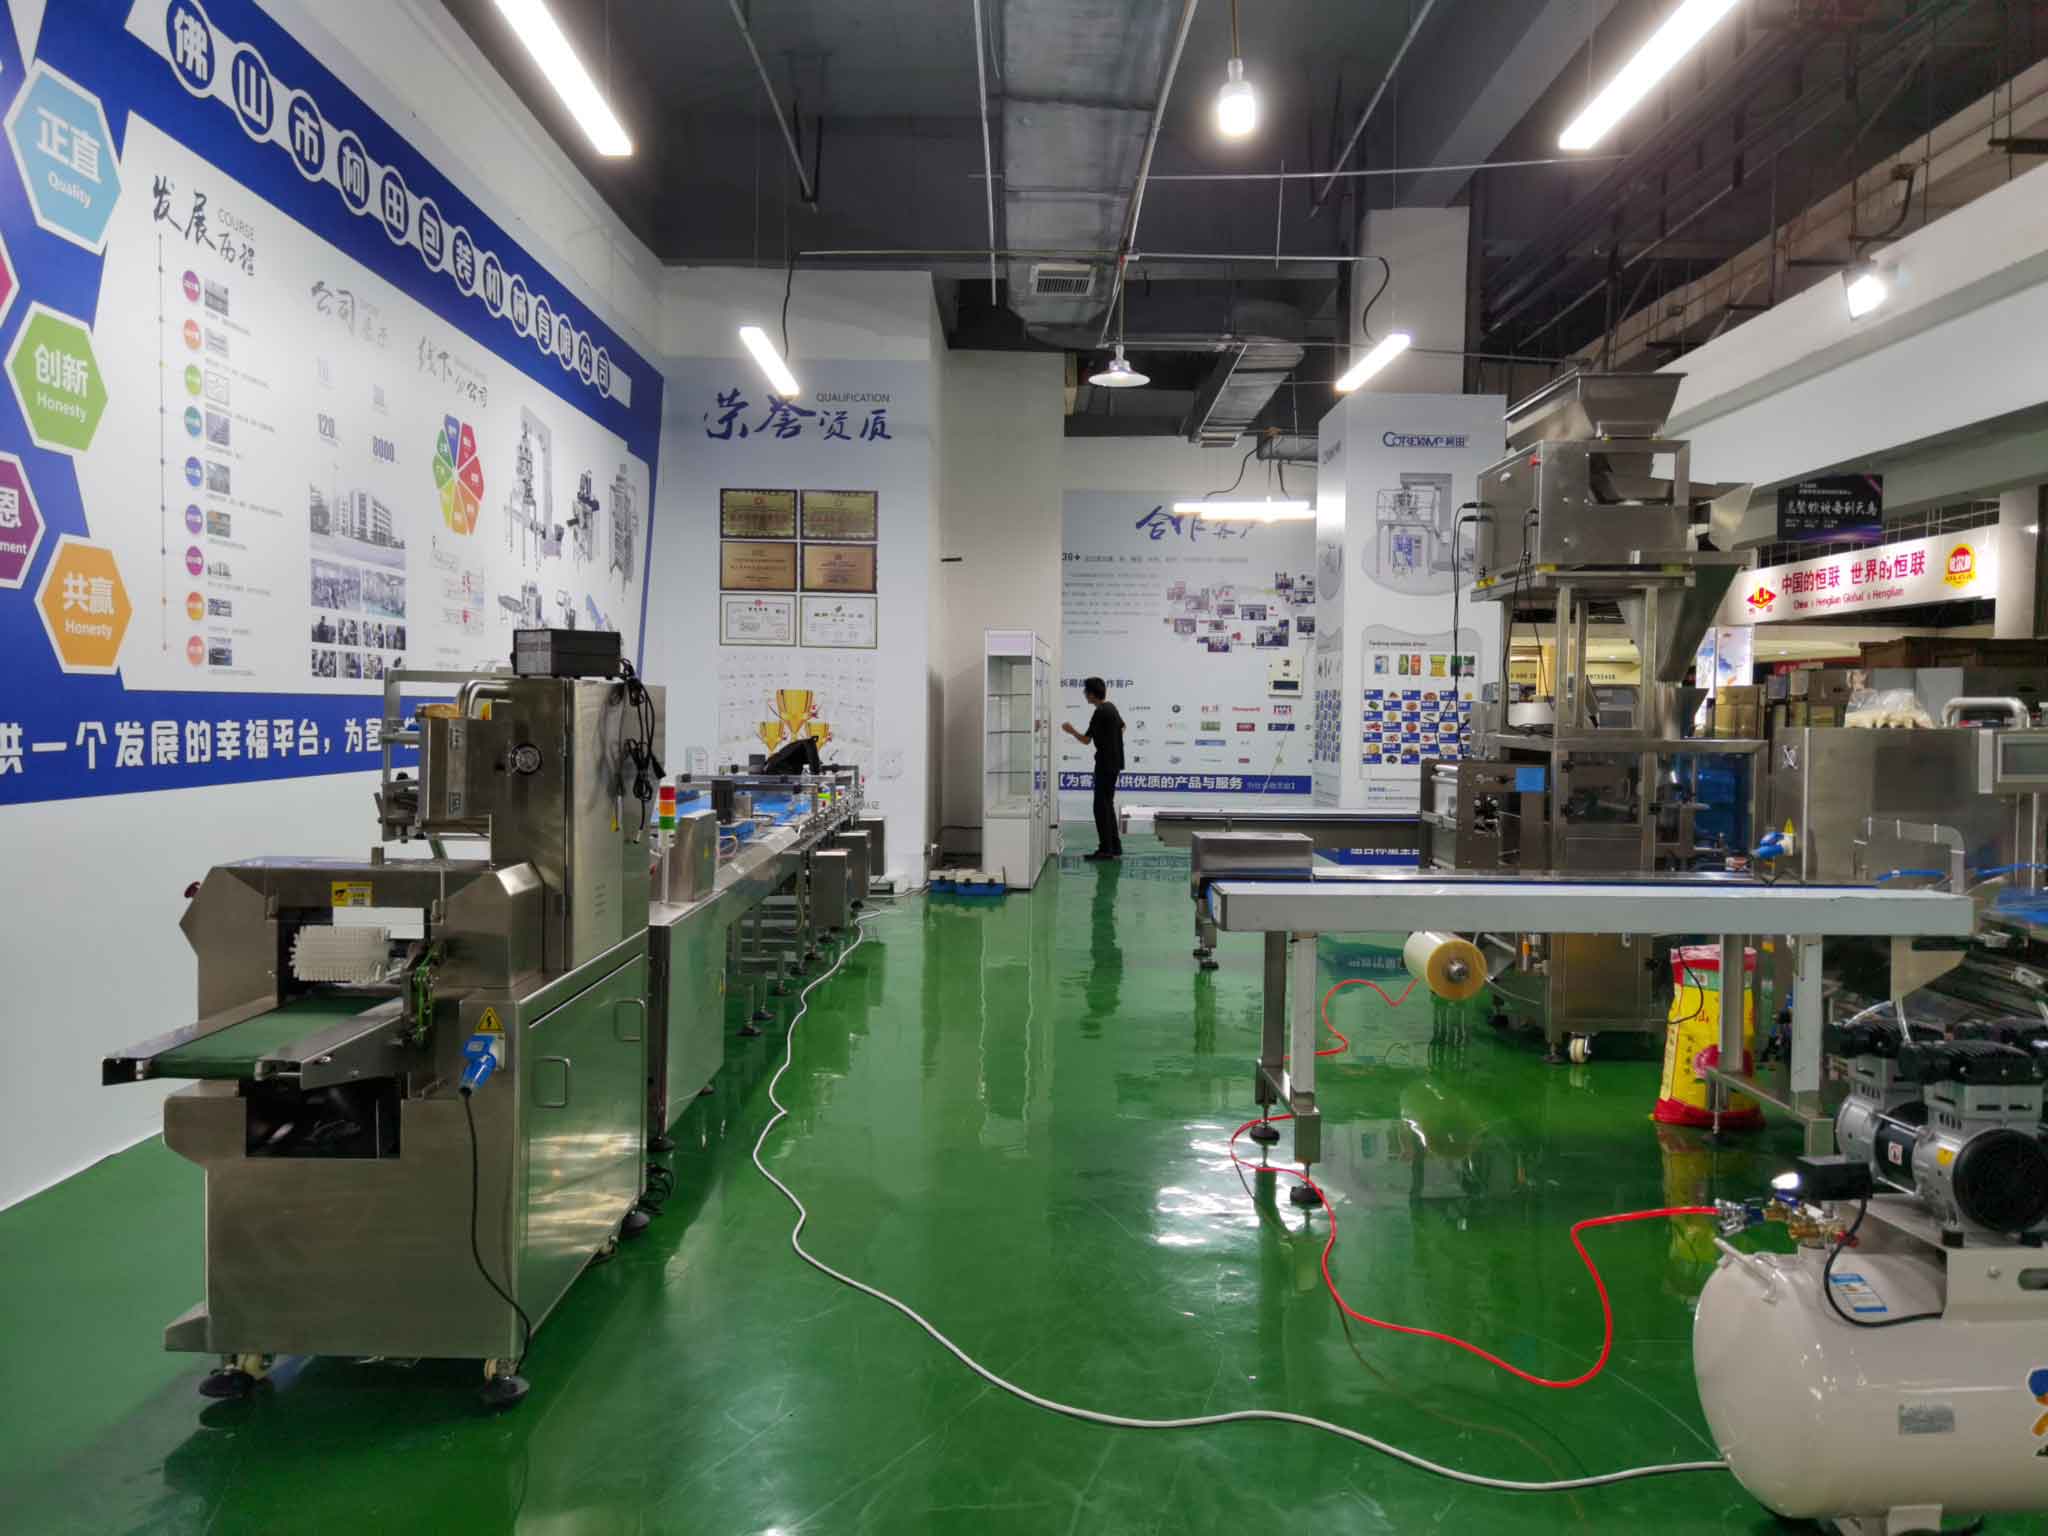 صالة عرض ماكينات التعبئة والتغليف لفرعنا في مدينة تشنغدو بالصين